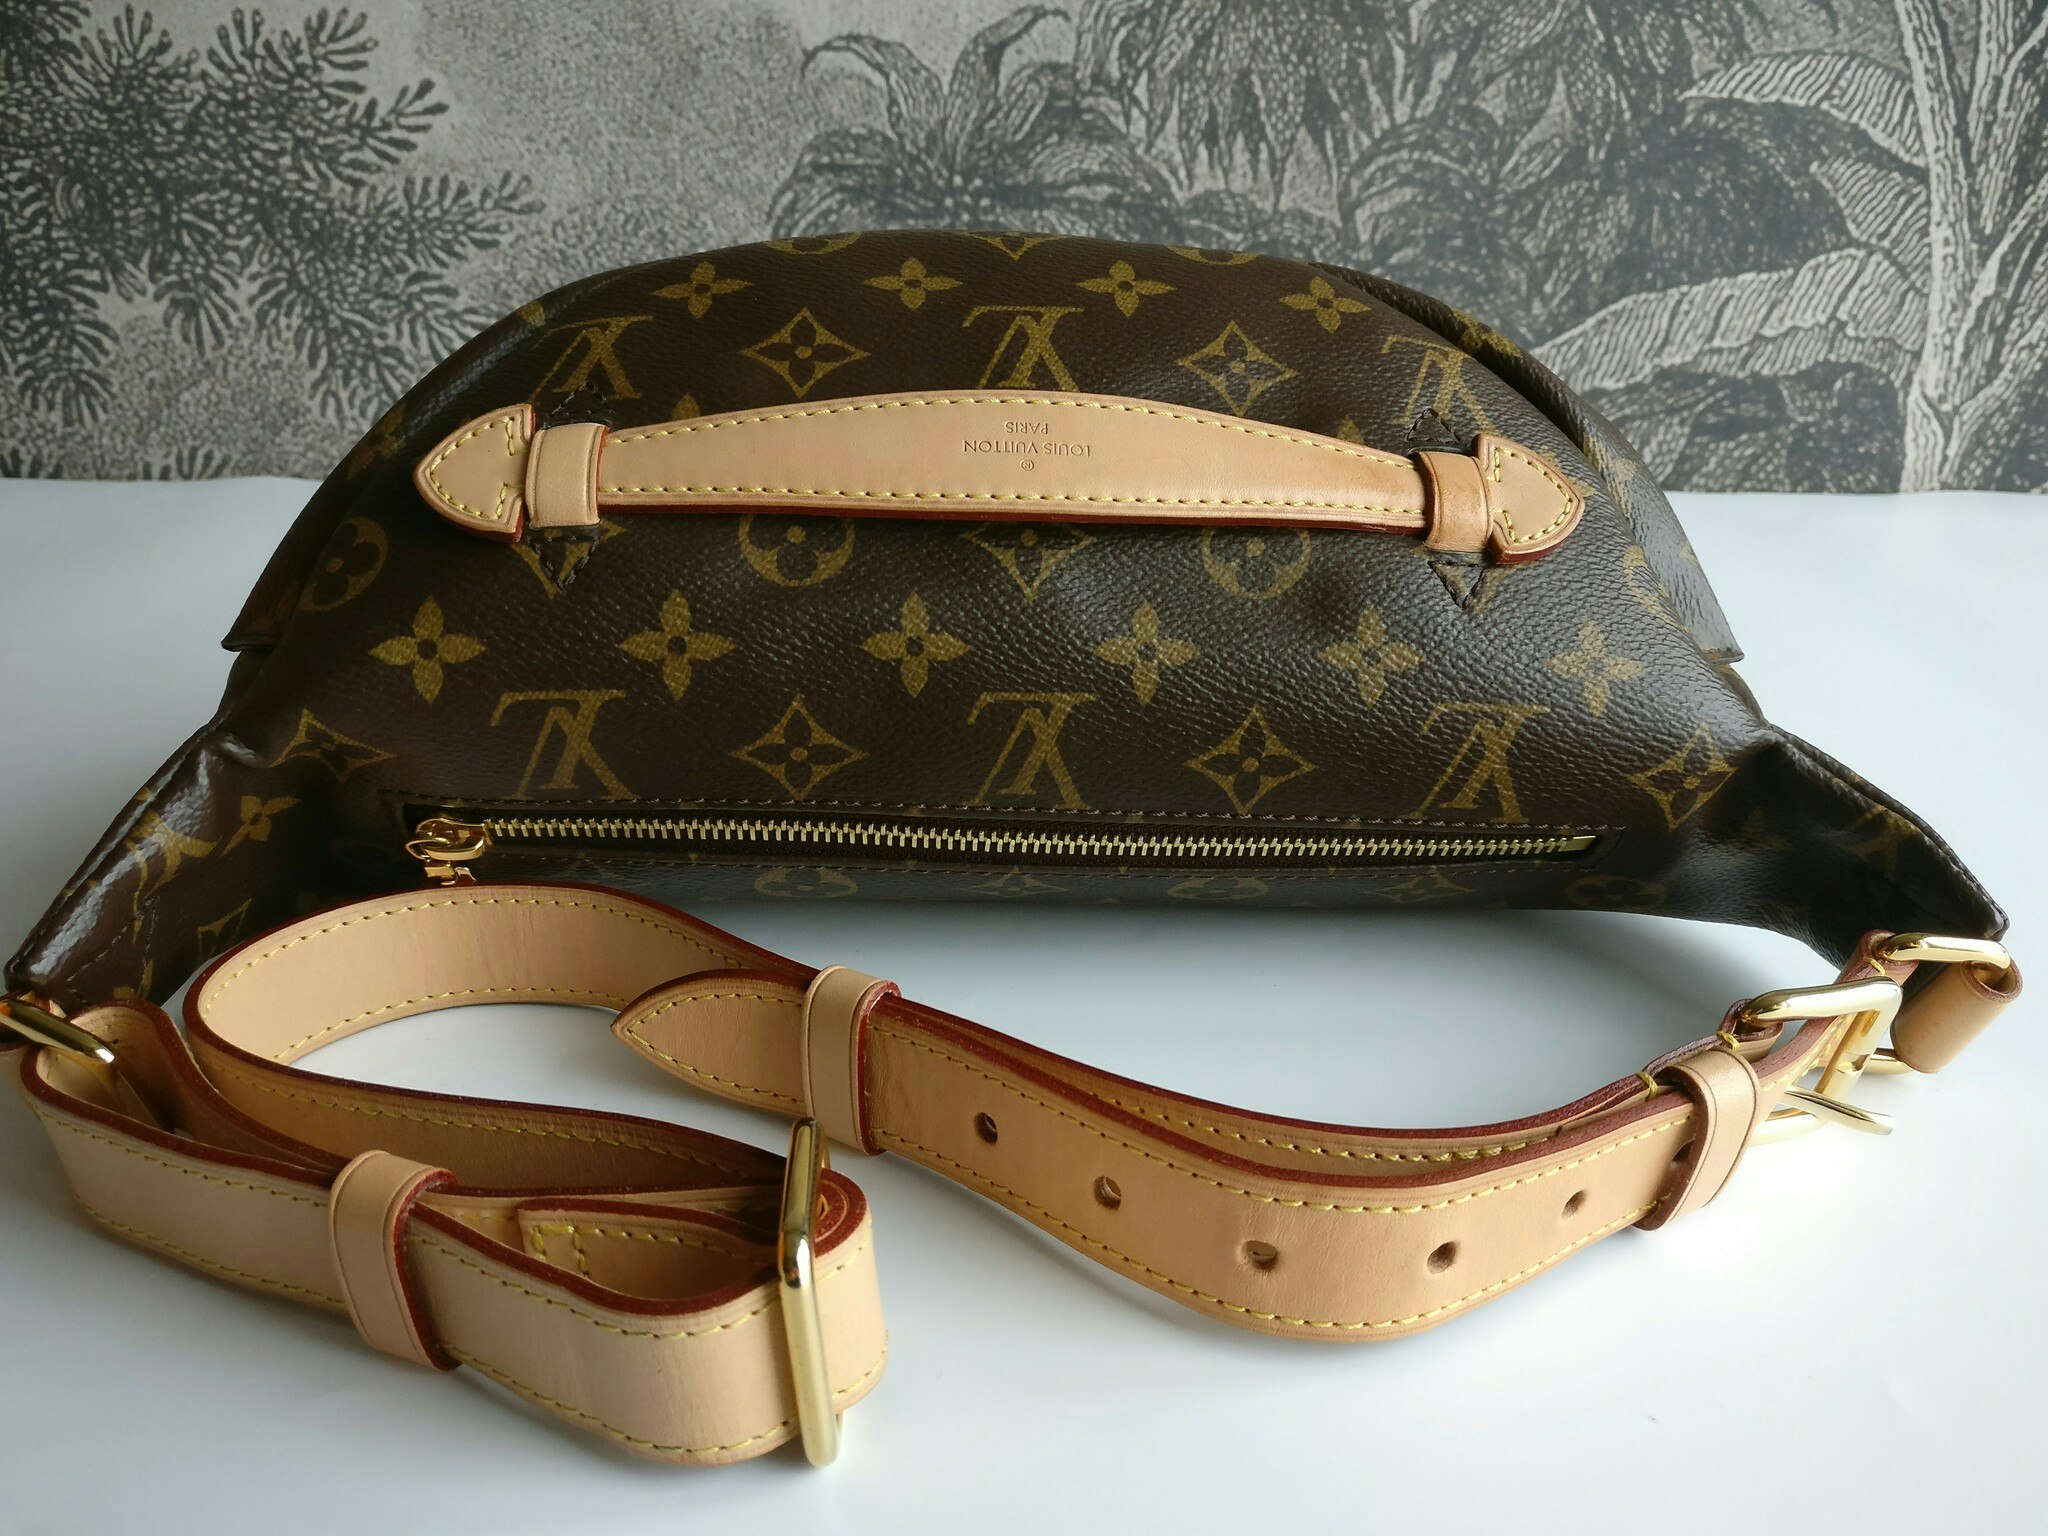 Louis Vuitton Bumbag - Good or Bag